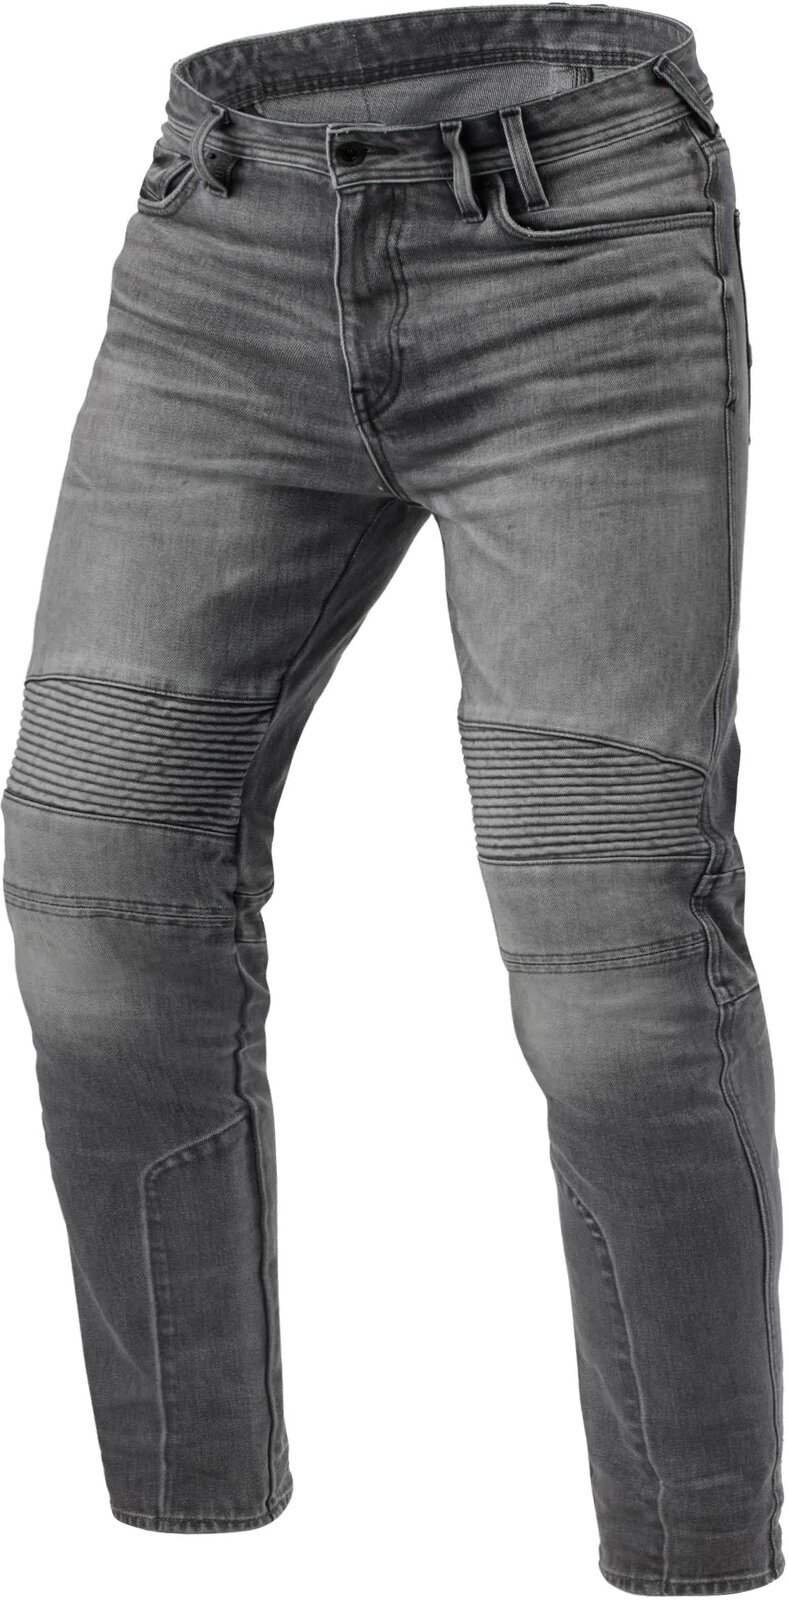 Motoristične jeans hlače Rev'it! Jeans Moto 2 TF Medium Grey 32/28 Motoristične jeans hlače